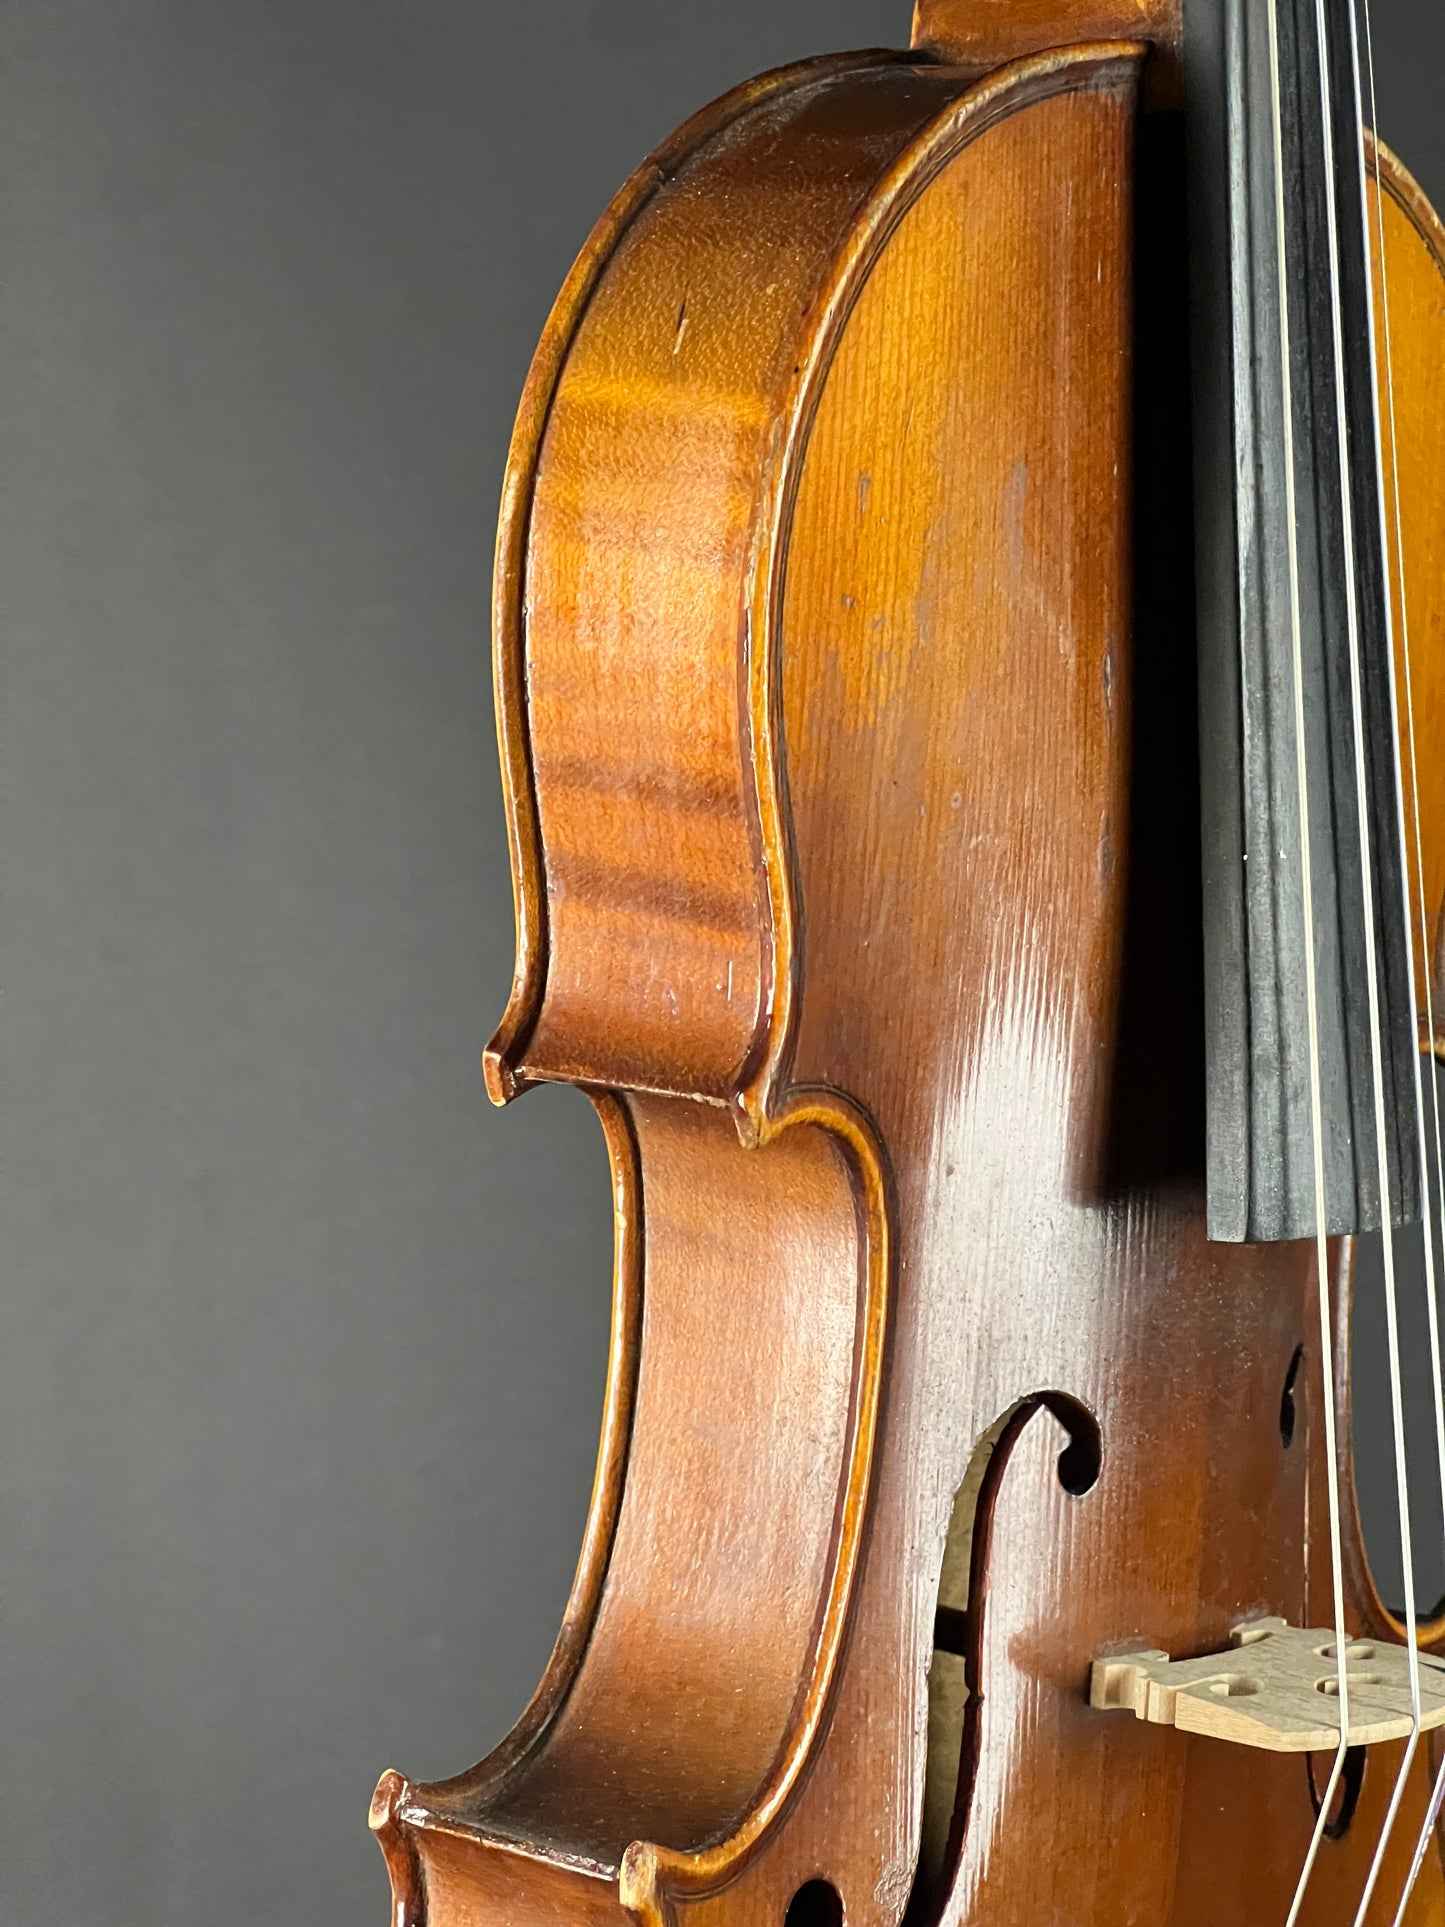 Copie de Antonius Stradiuarius Cremonenfis Fasciebat Anno 1721 Violin - Used